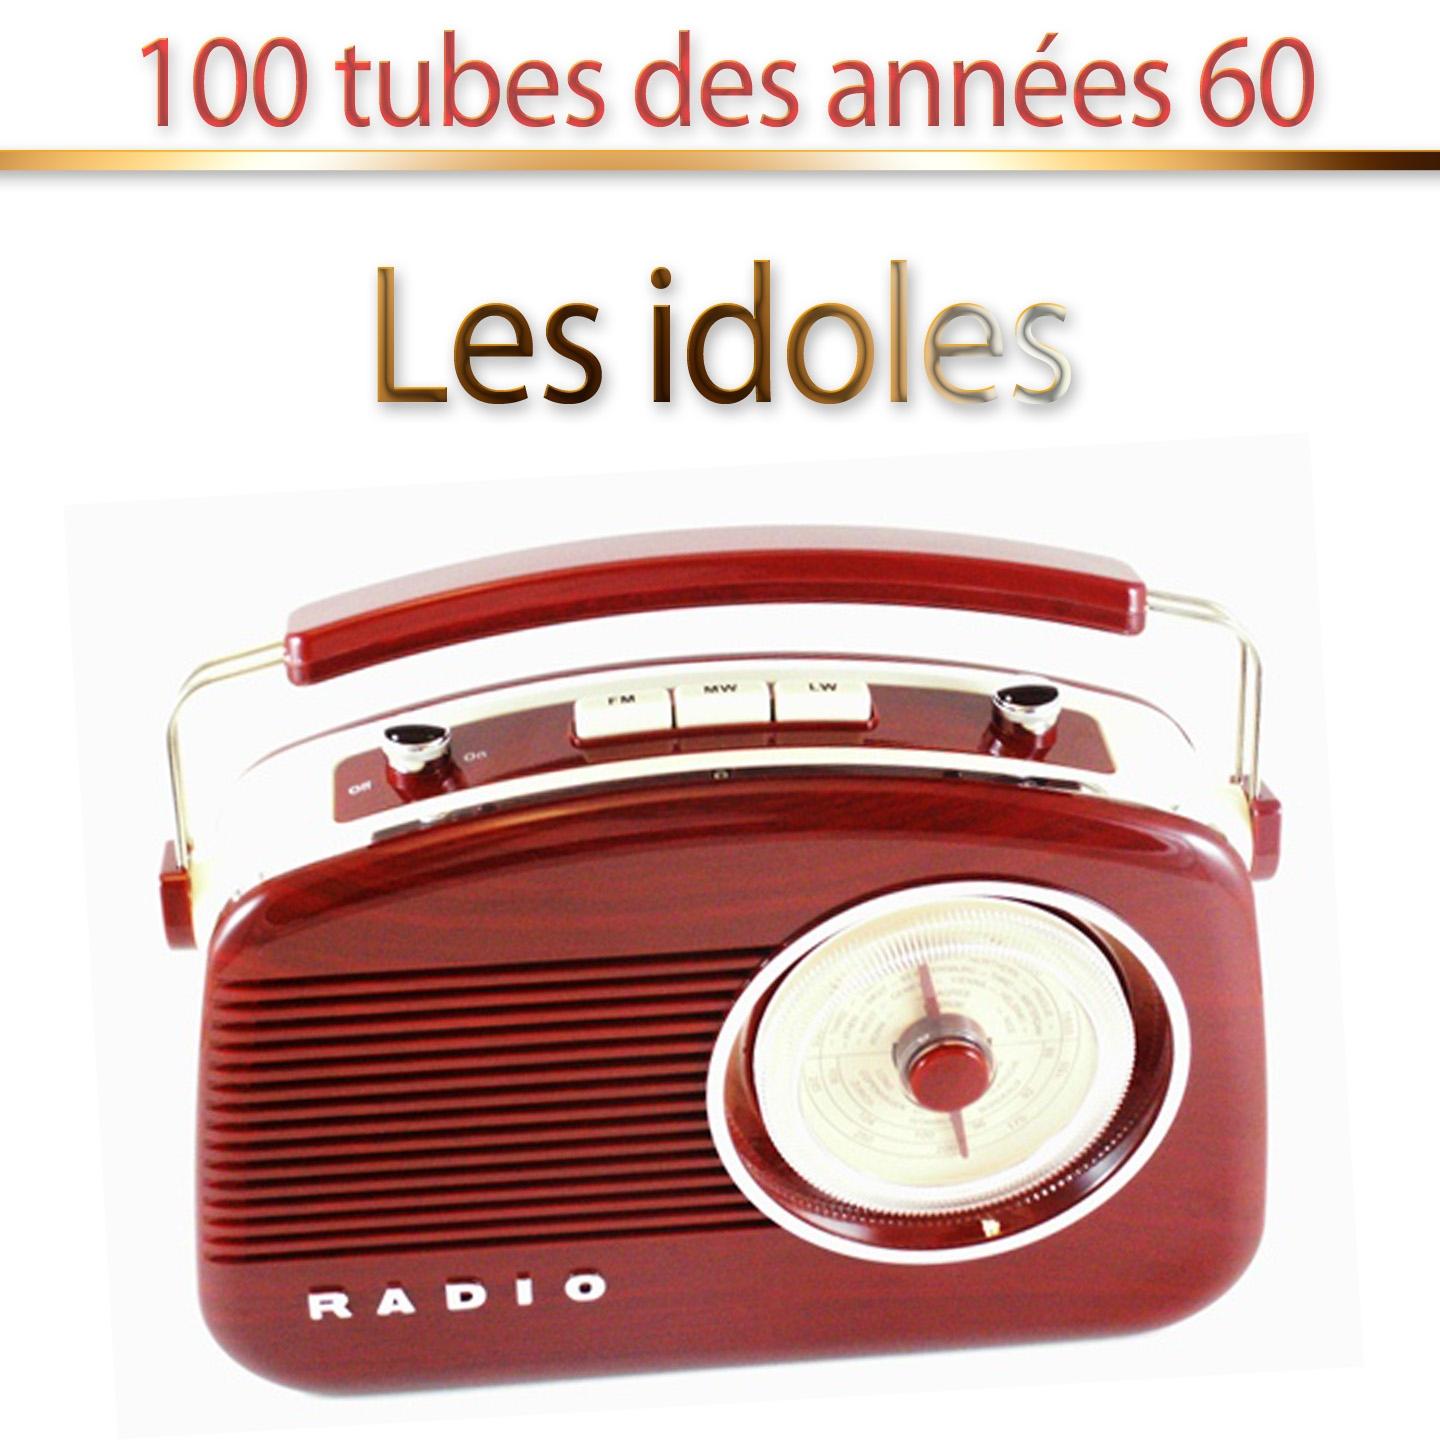 Les idoles (100 tubes des années 60)